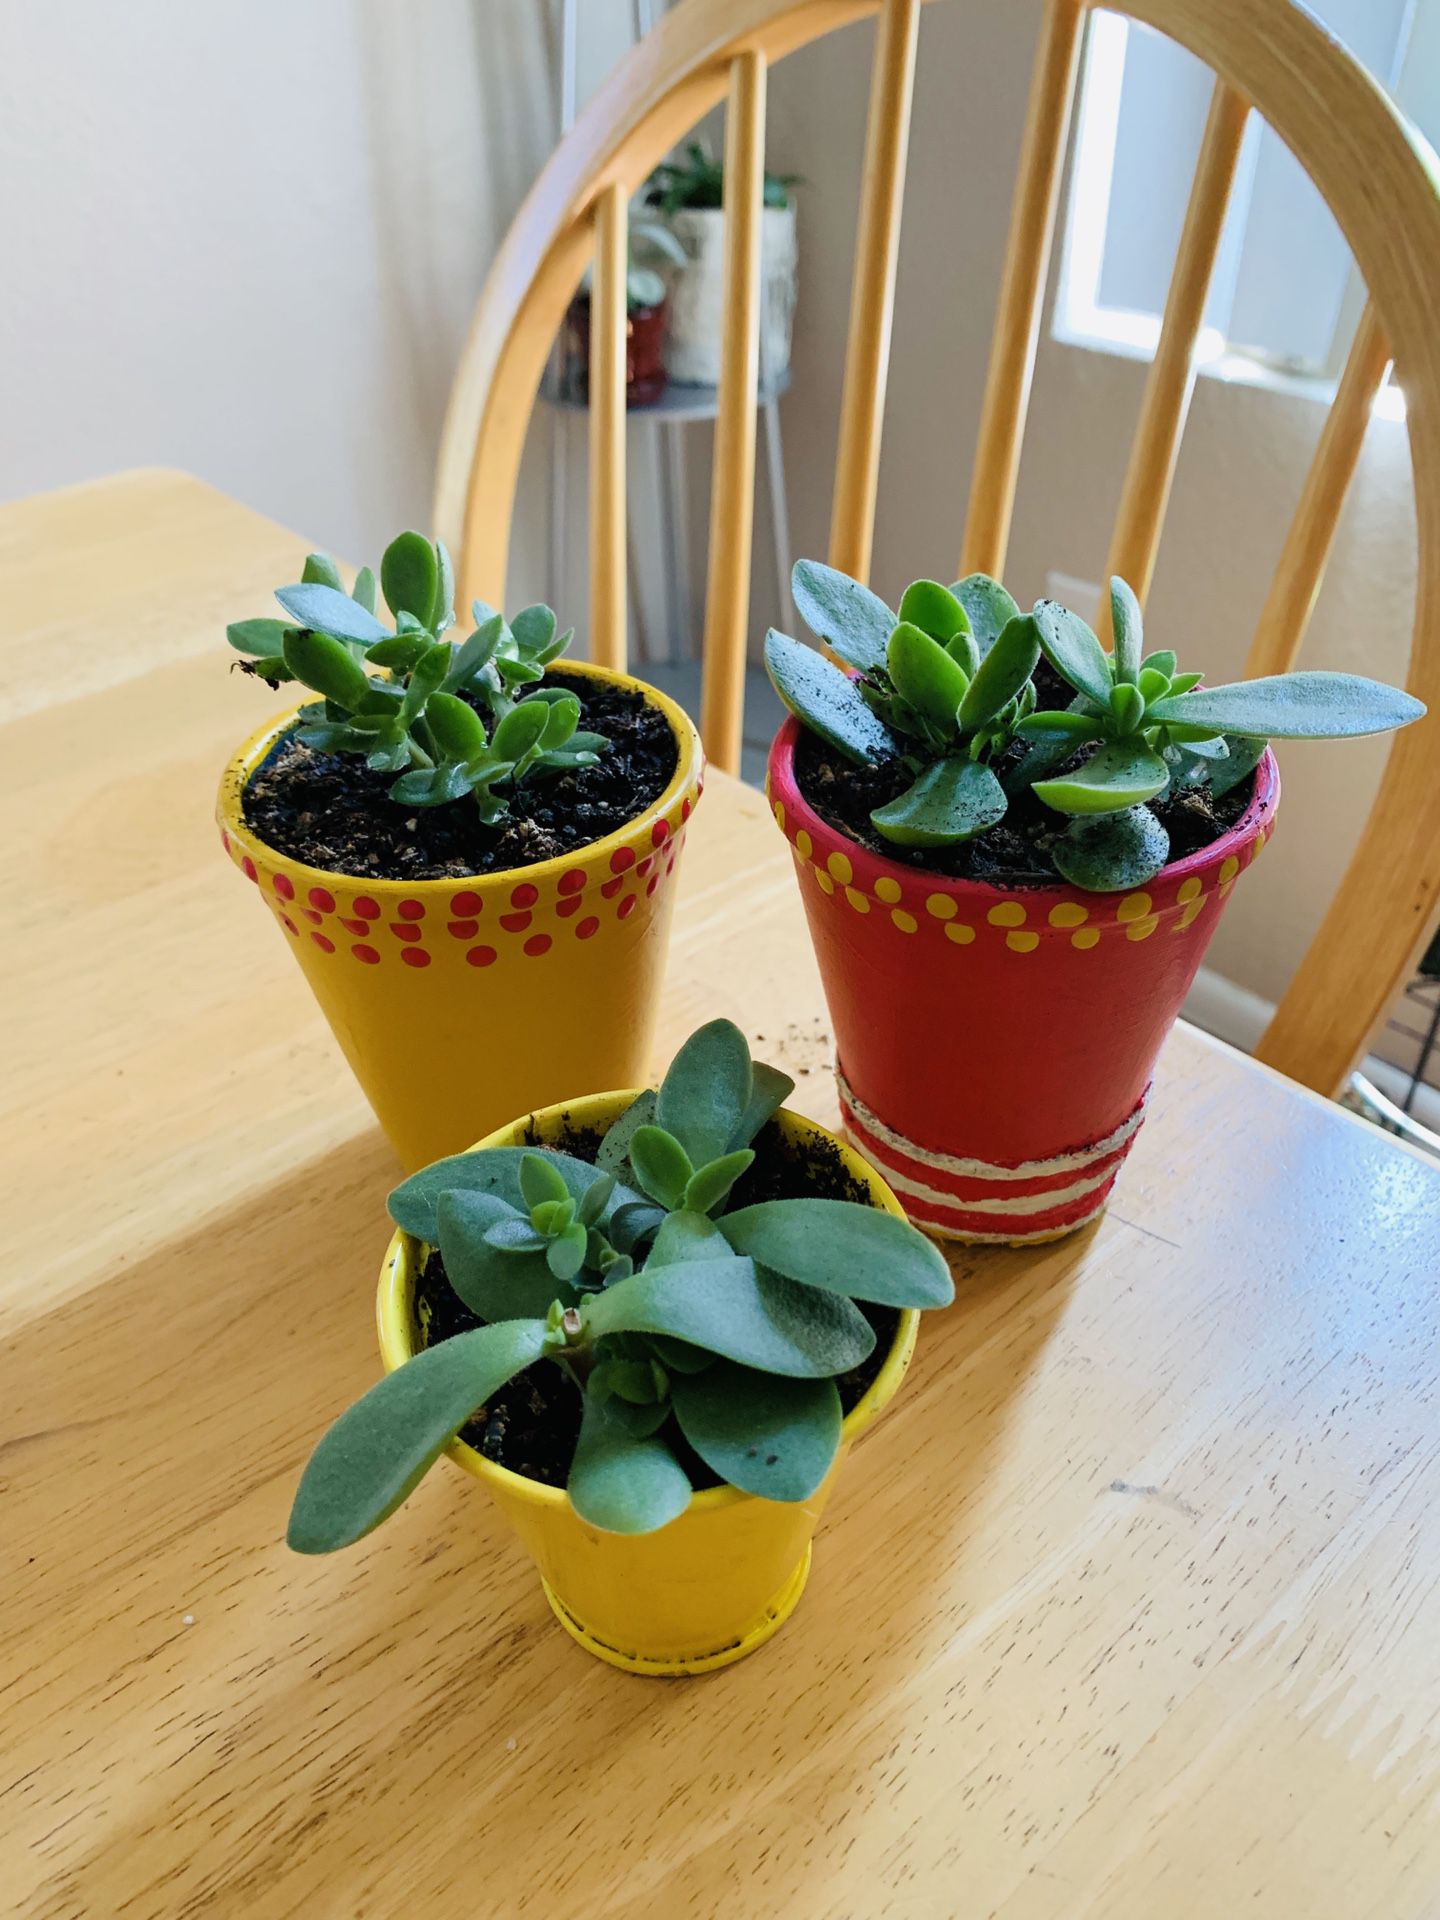 Live succulent plants-3plants